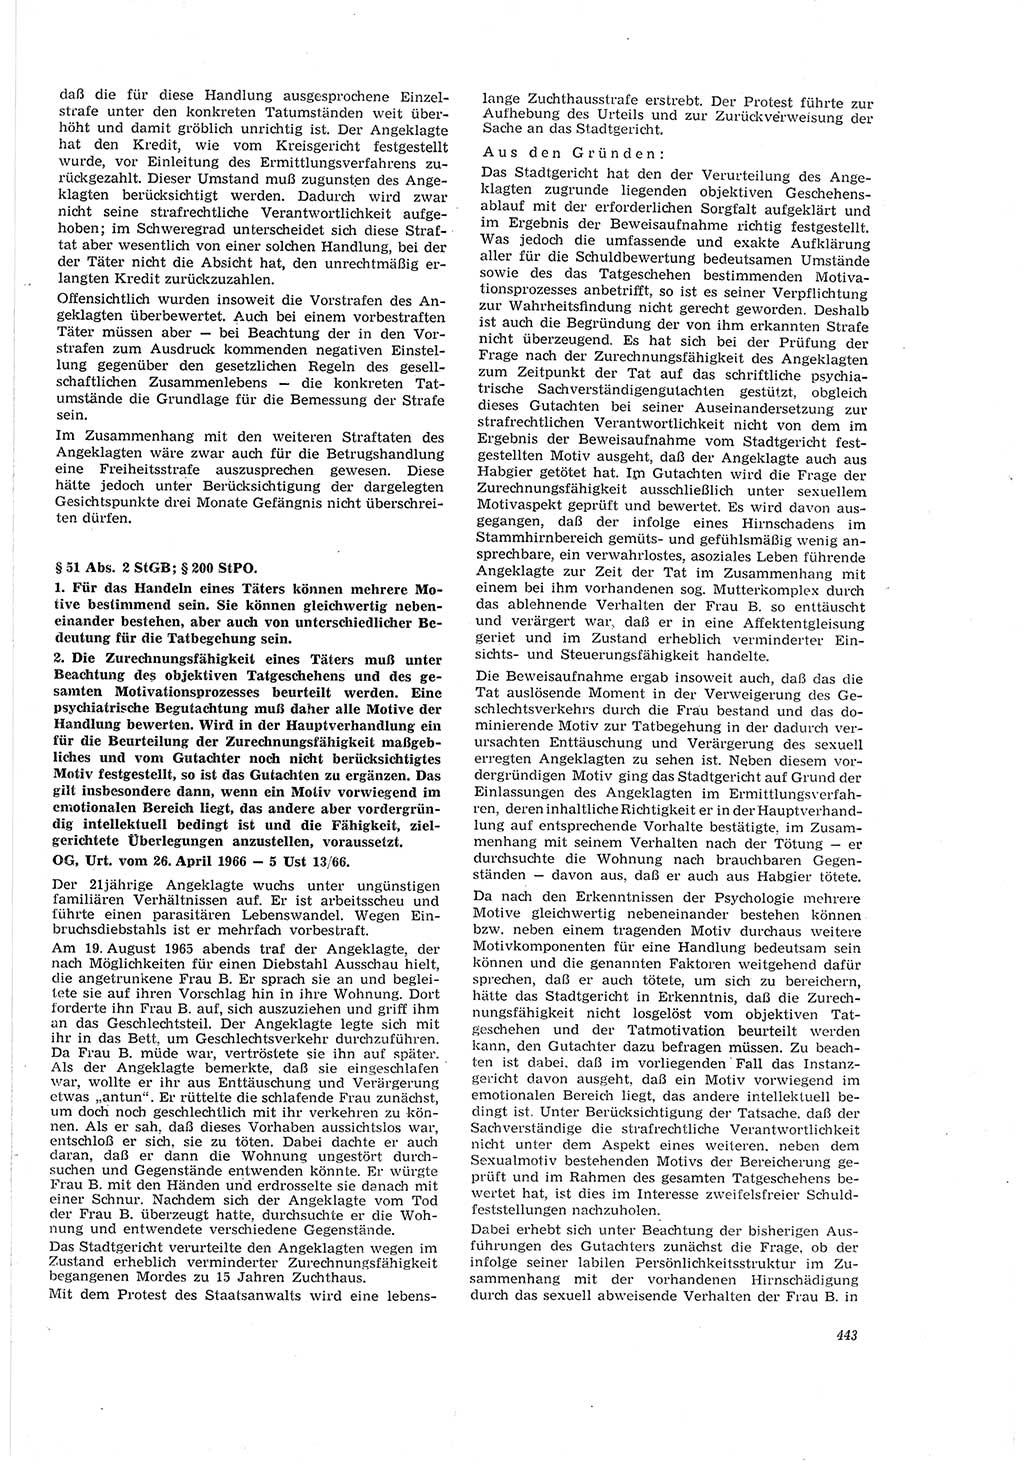 Neue Justiz (NJ), Zeitschrift für Recht und Rechtswissenschaft [Deutsche Demokratische Republik (DDR)], 20. Jahrgang 1966, Seite 443 (NJ DDR 1966, S. 443)